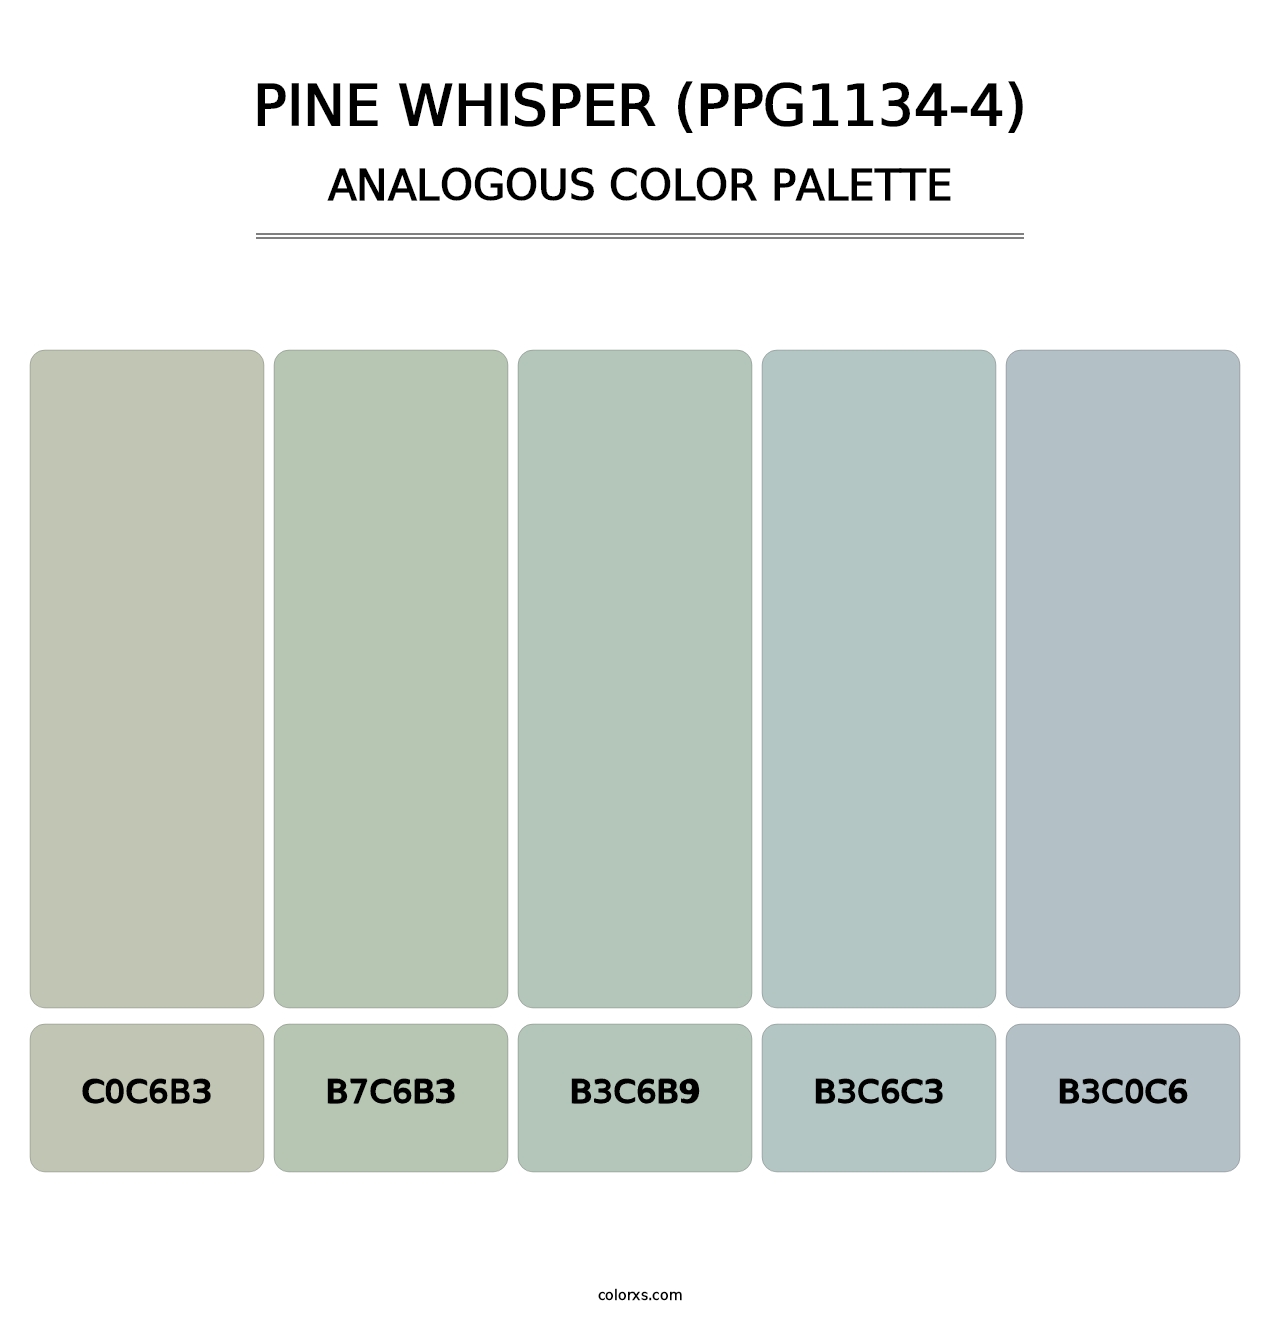 Pine Whisper (PPG1134-4) - Analogous Color Palette